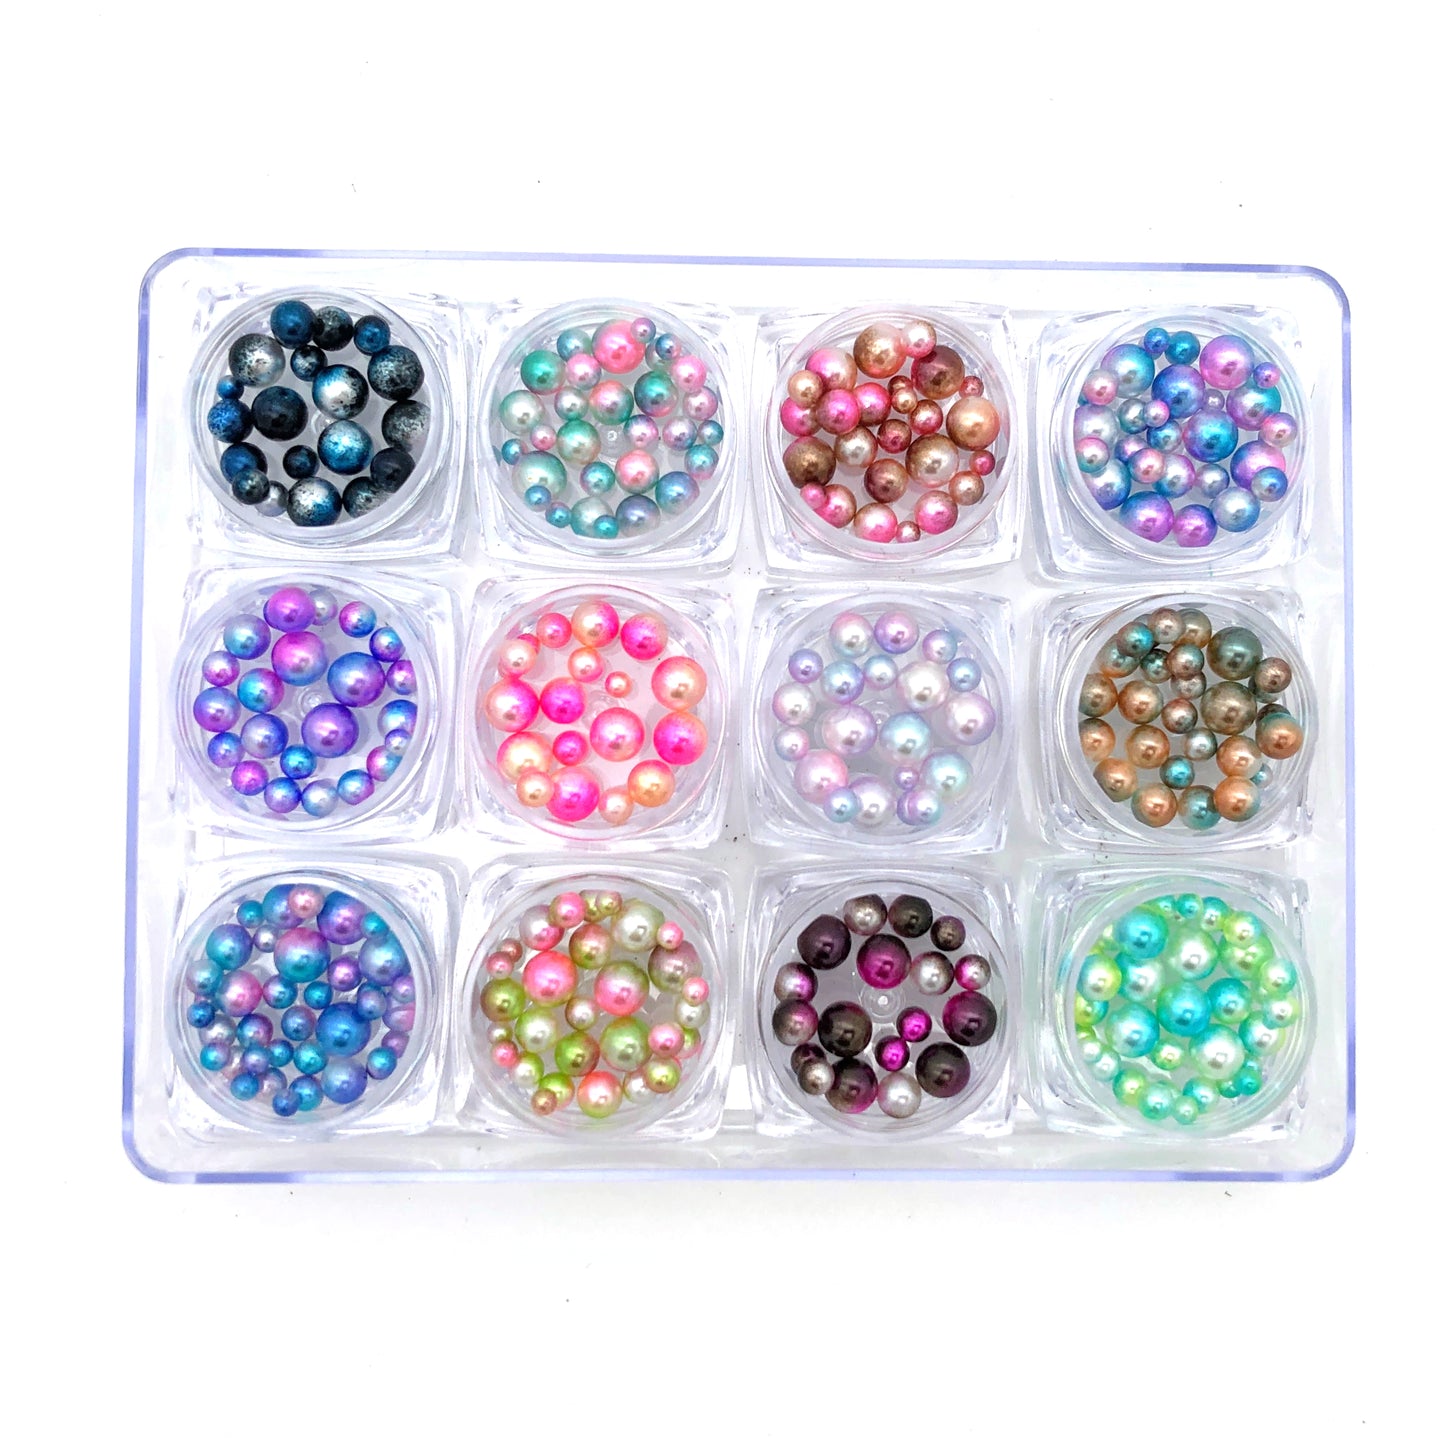 Mermaid-Perlen in 12 verschiedenen Farben